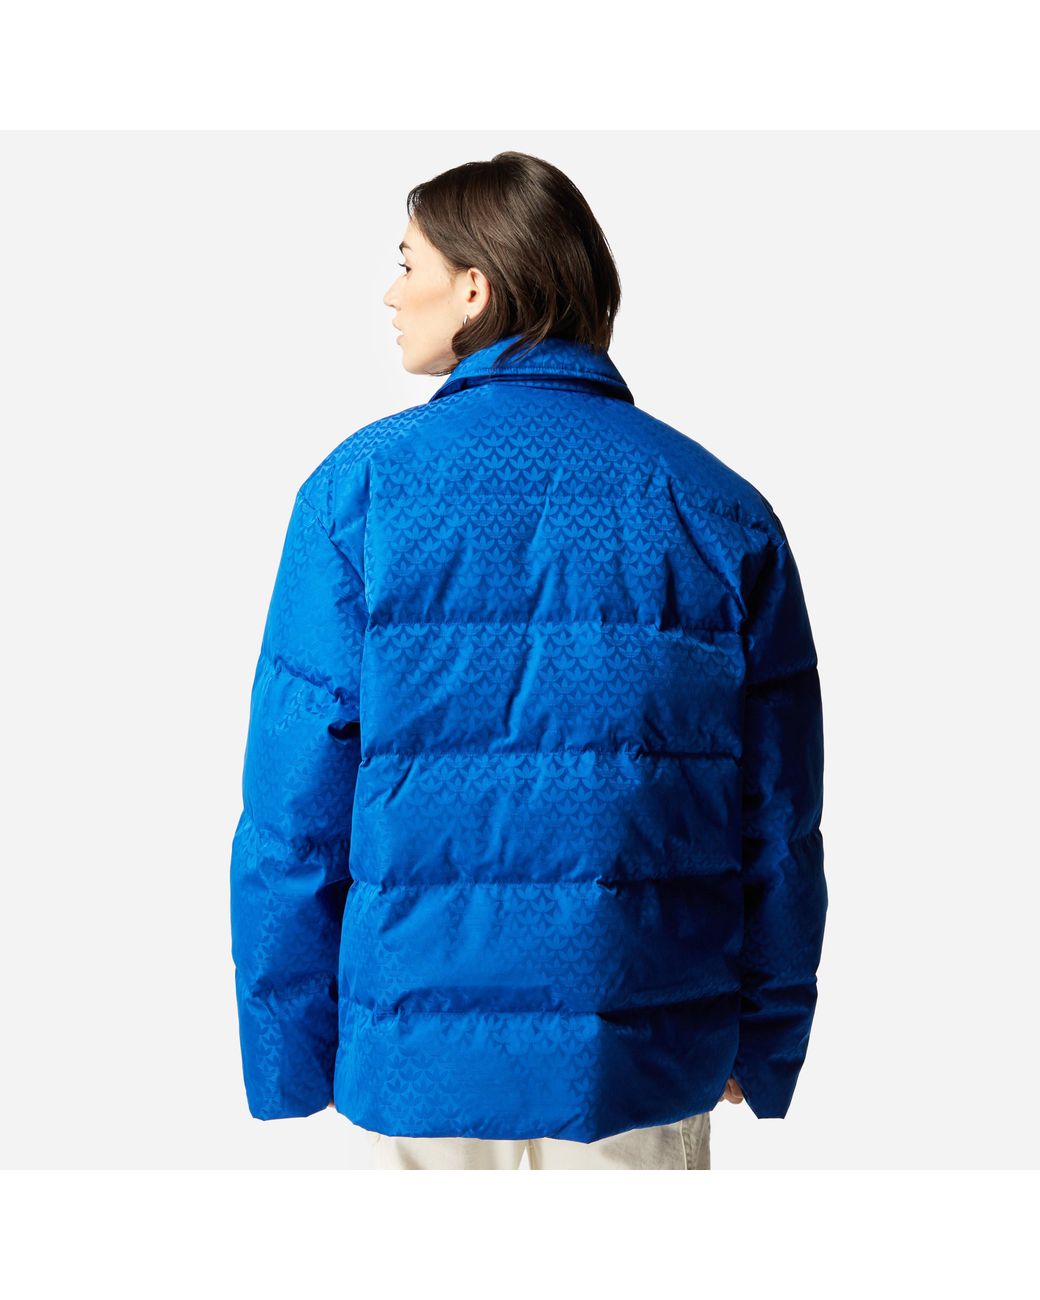 adidas Originals Adicolor 70s Monogram Puffer Jacket Women's in Blue | Lyst